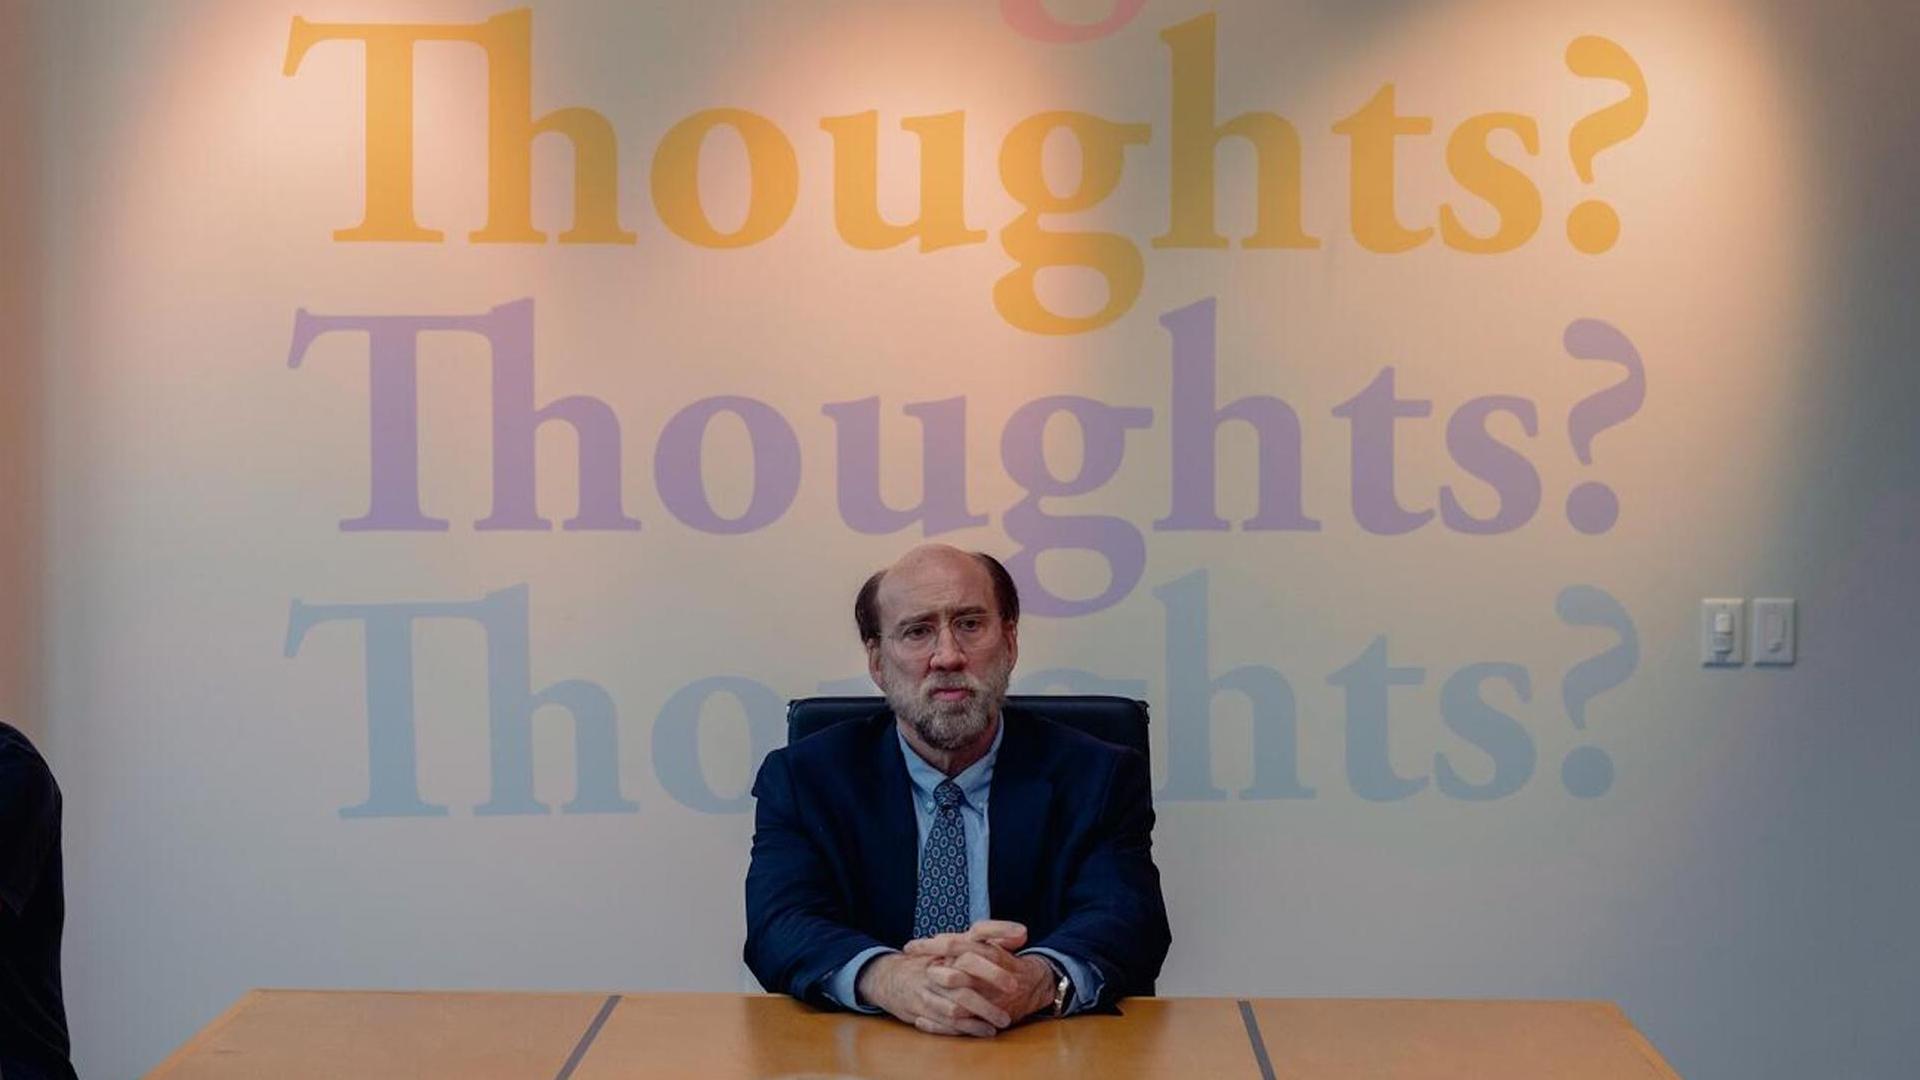 Im Still aus "Dream Scenario" sitzt Nicolas Cage mit nachdenklichem Gesichtsausdruck an einem Tisch. Hinter ihm steht in großen, bunten Buchstaben das Wort "Thoughts?" an der Wand.